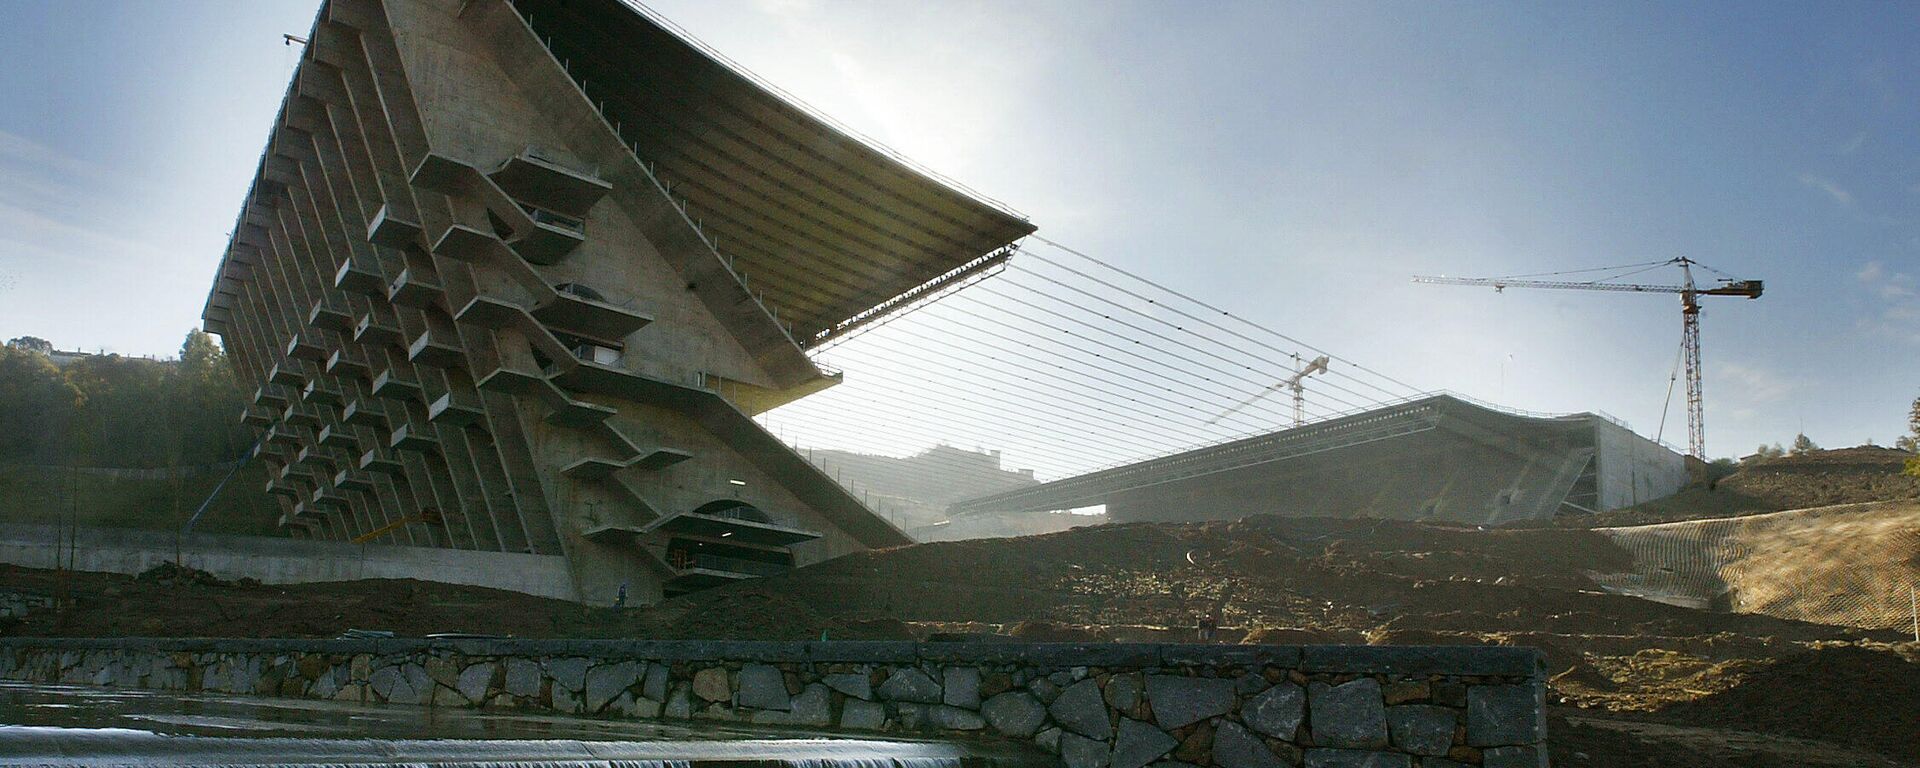 Stadion Brage - Sputnik Srbija, 1920, 26.11.2021